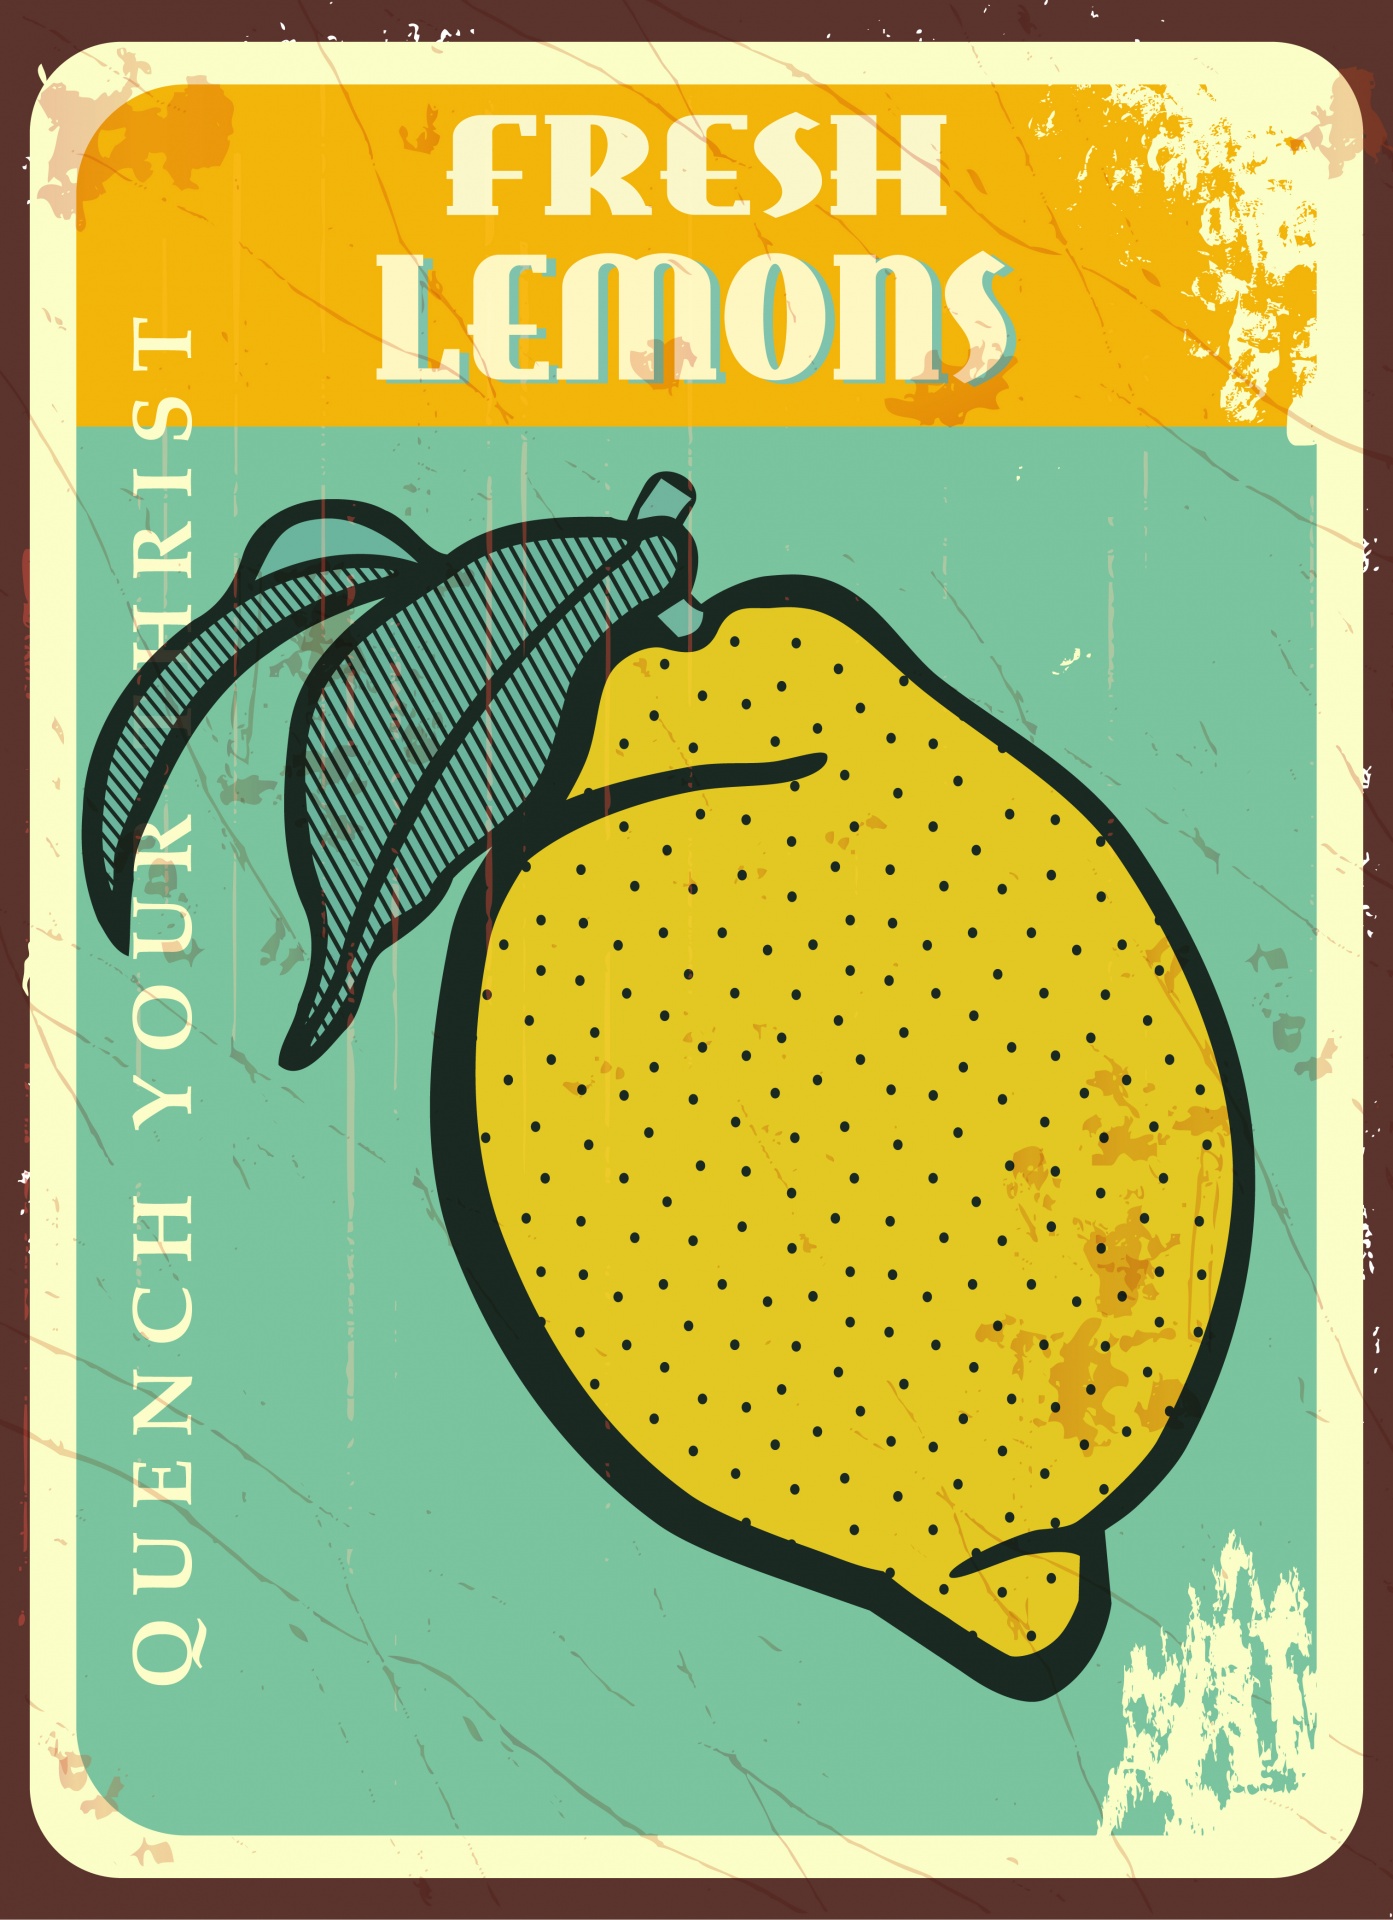 Lemons Vintage Poster Sign